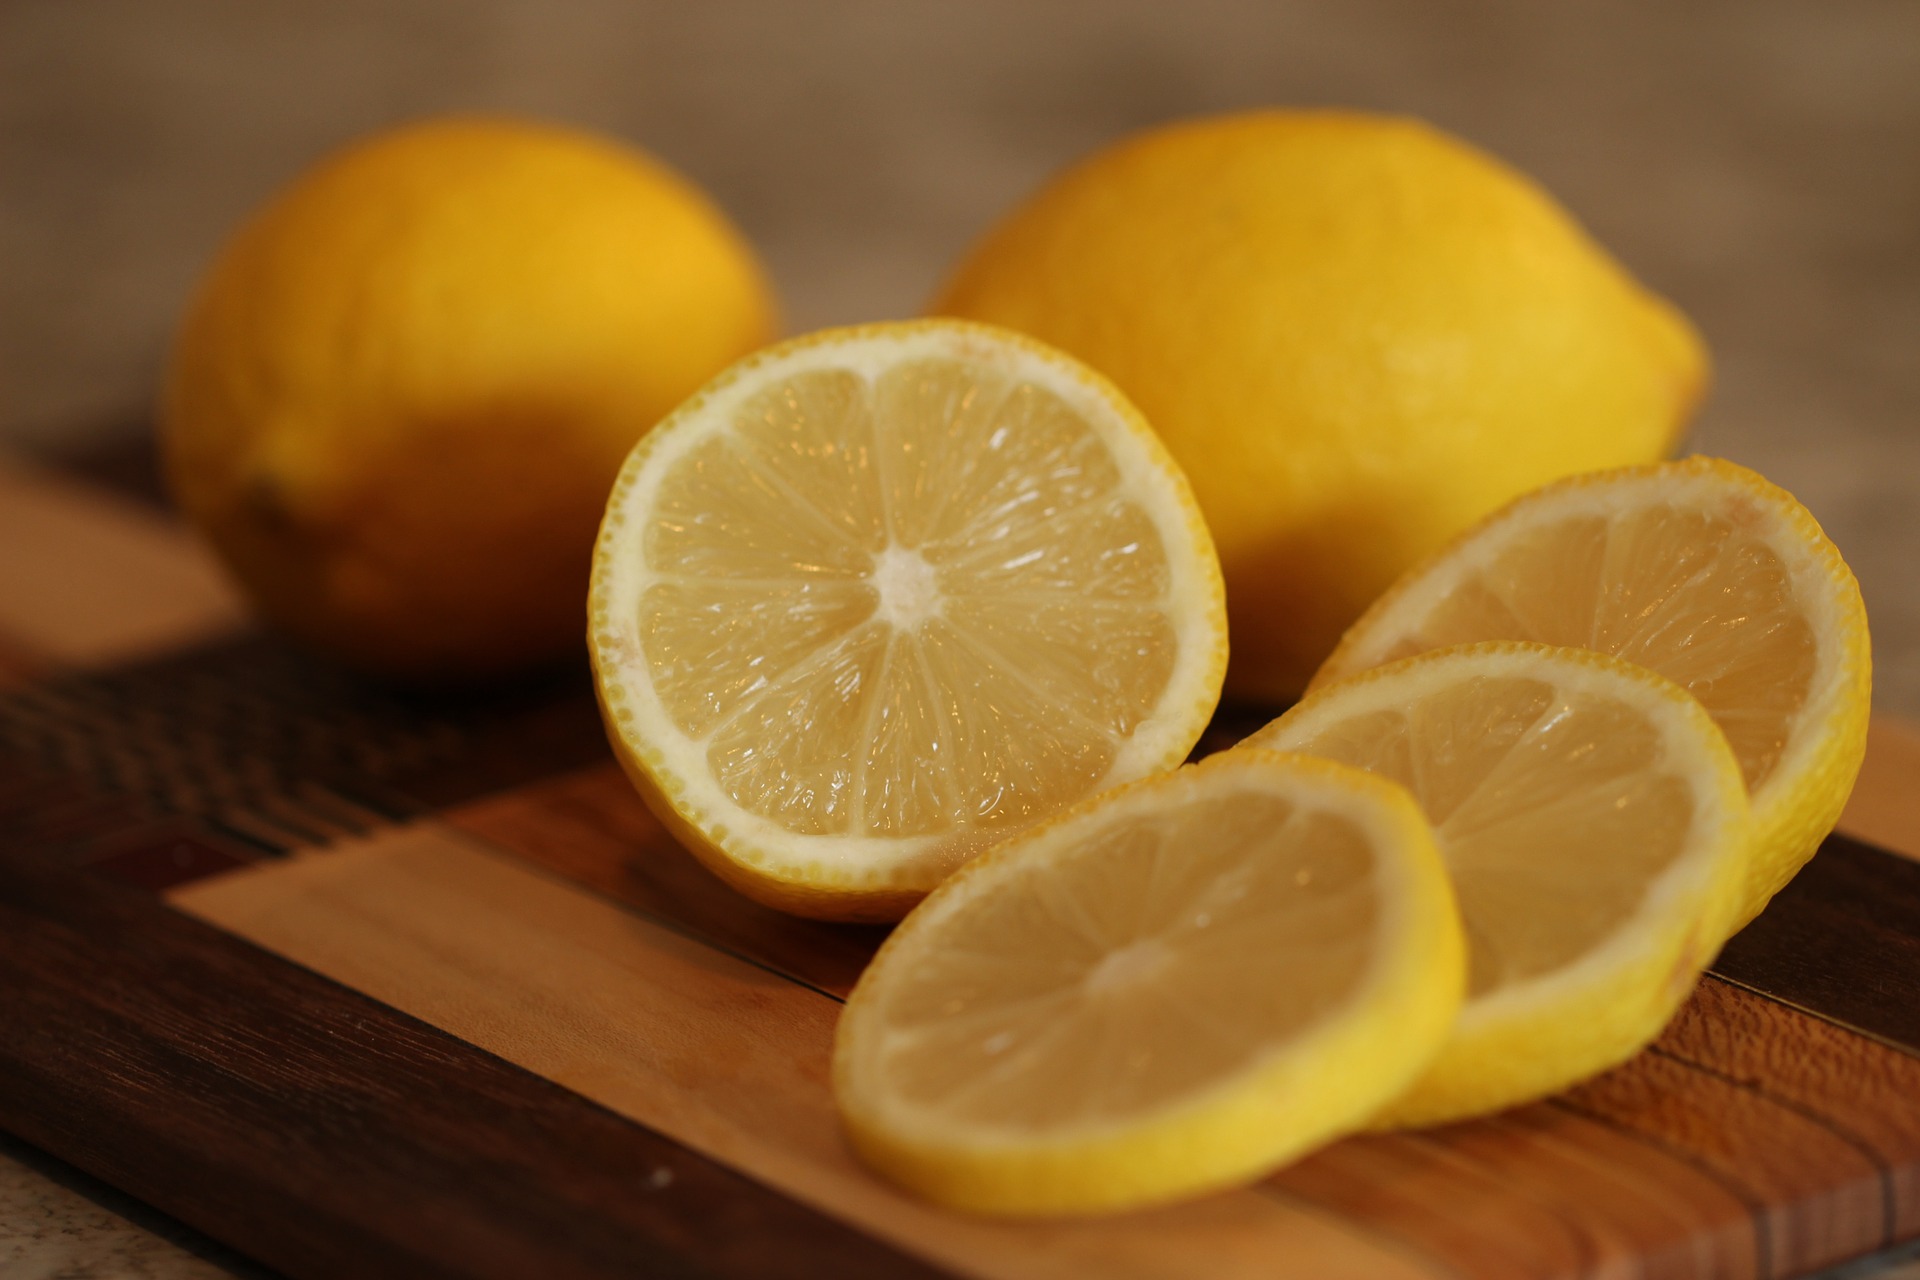 Perte de poids : quels sont les bienfaits minceur et santé de l'eau  citronnée ?